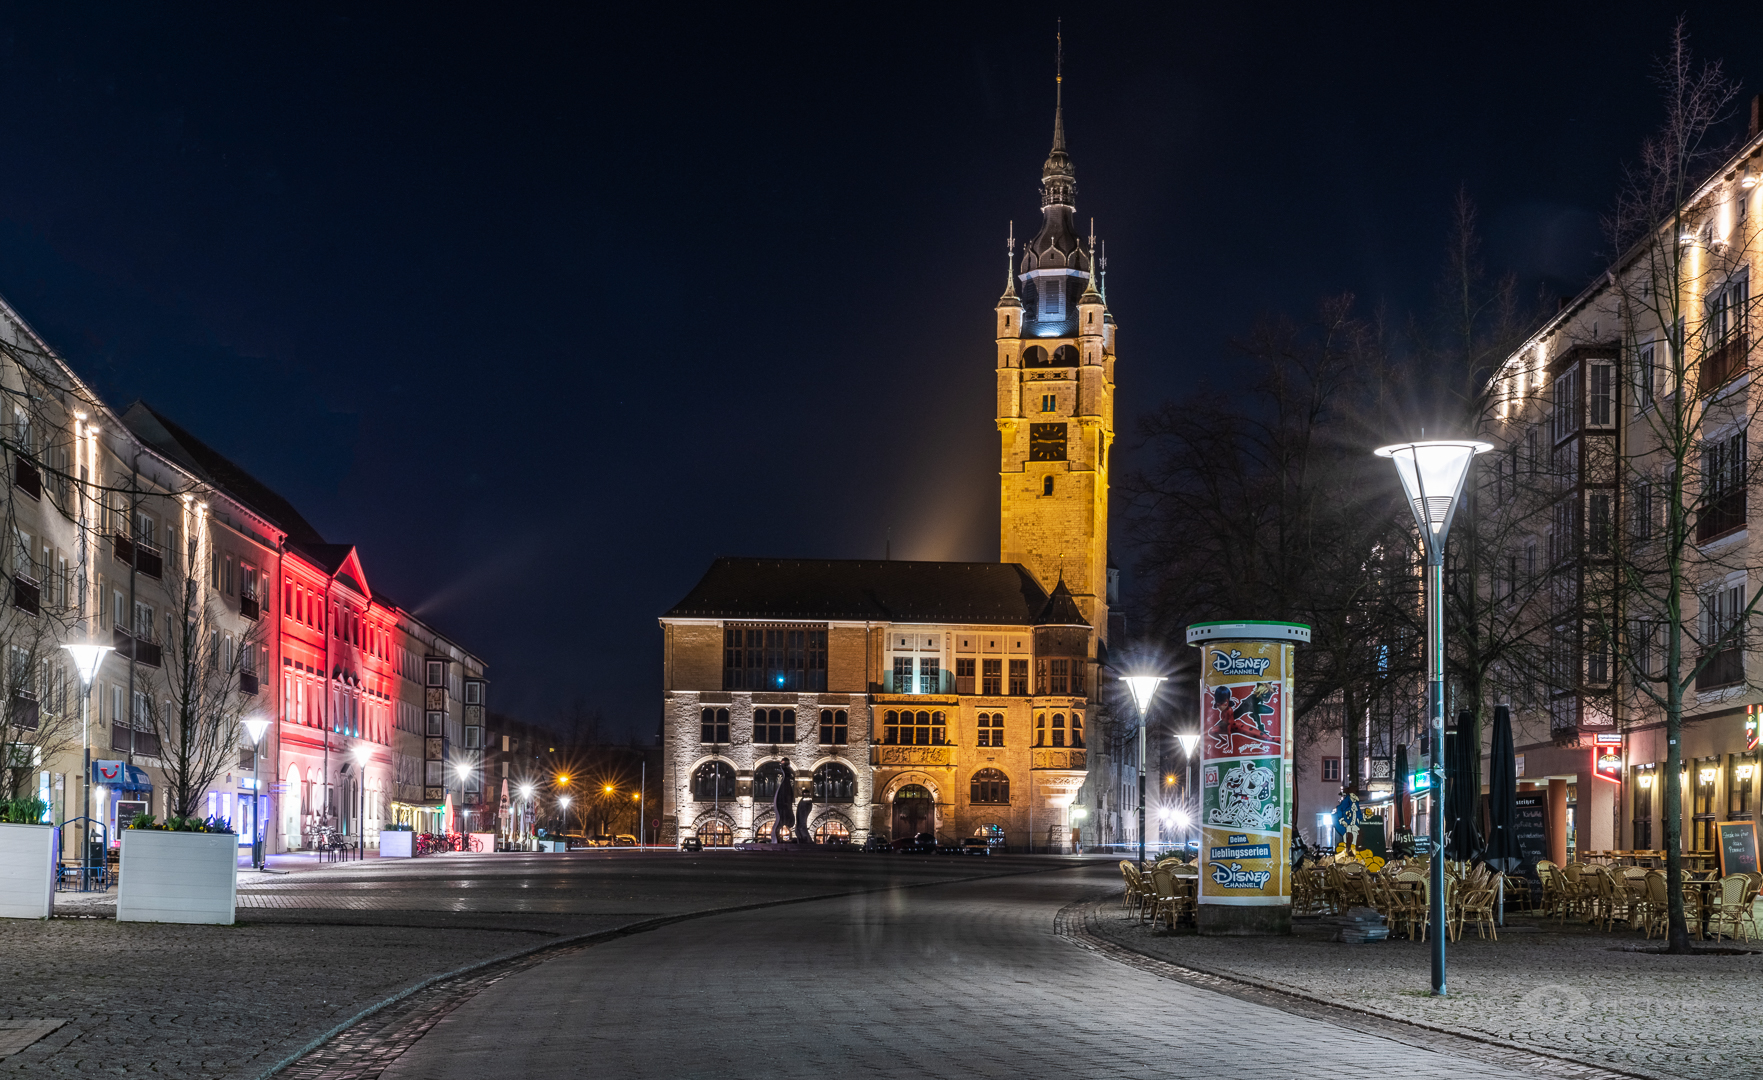 Dessauer Stadtansichten -7- Markt mit Rathaus